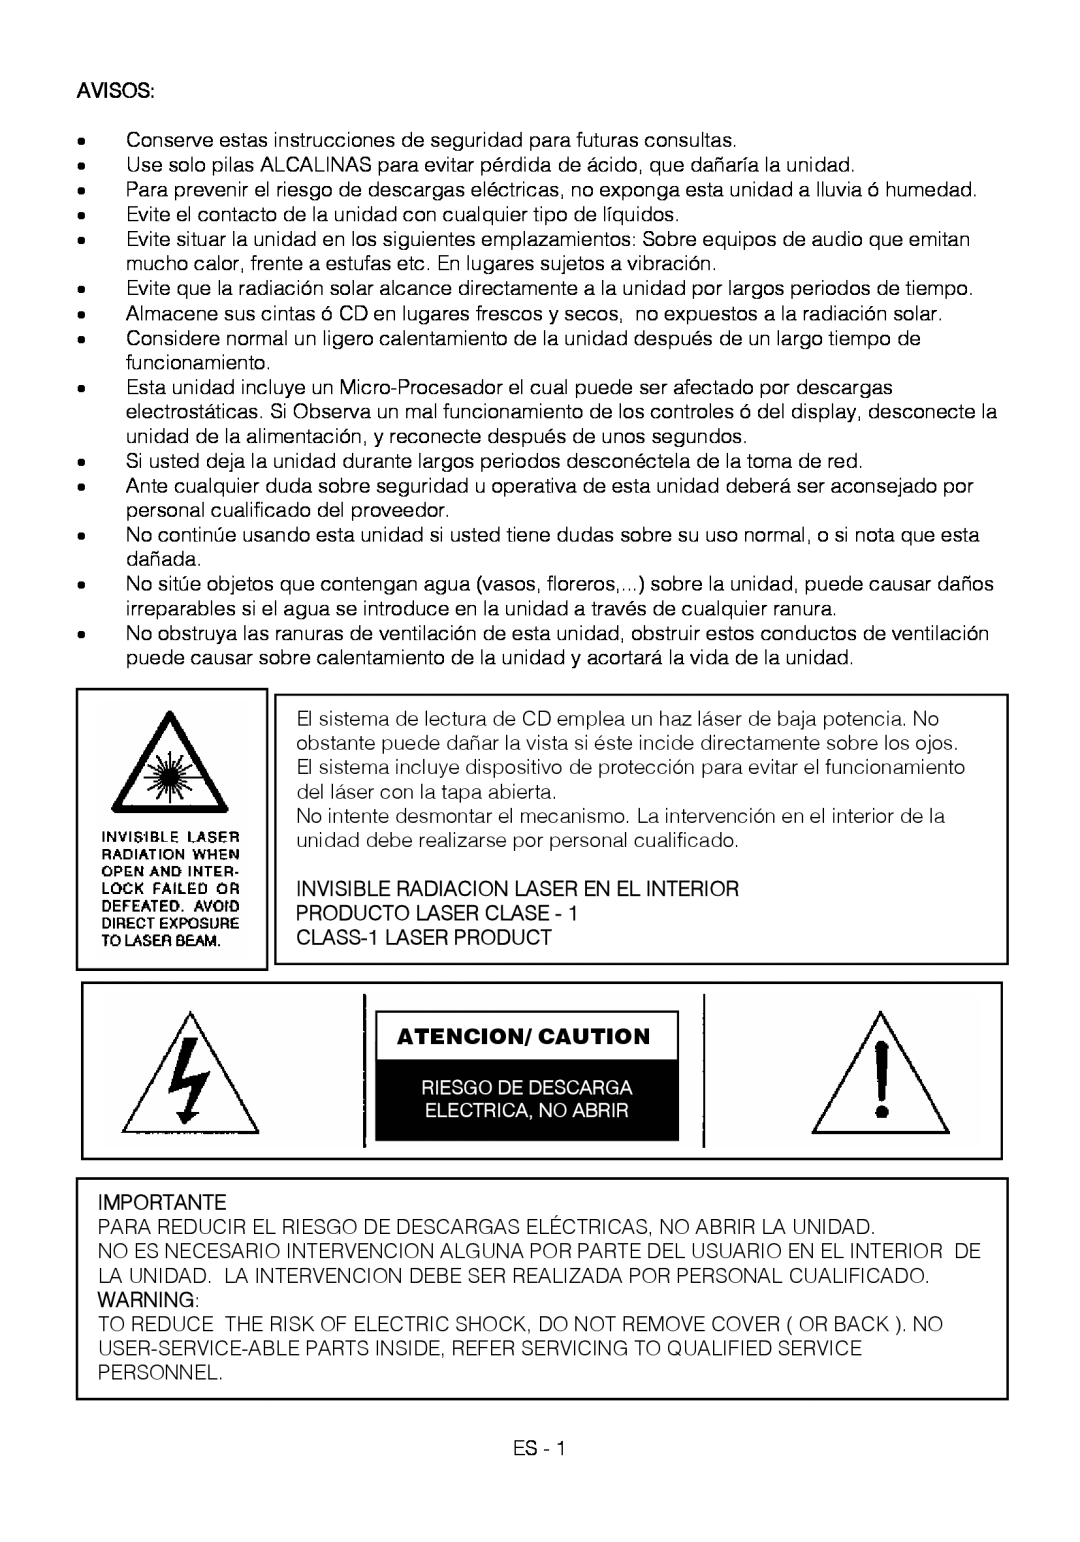 Motorola BSA-1520 instruction manual Atencion/ Caution, Avisos, Invisible Radiacion Laser En El Interior, Importante 